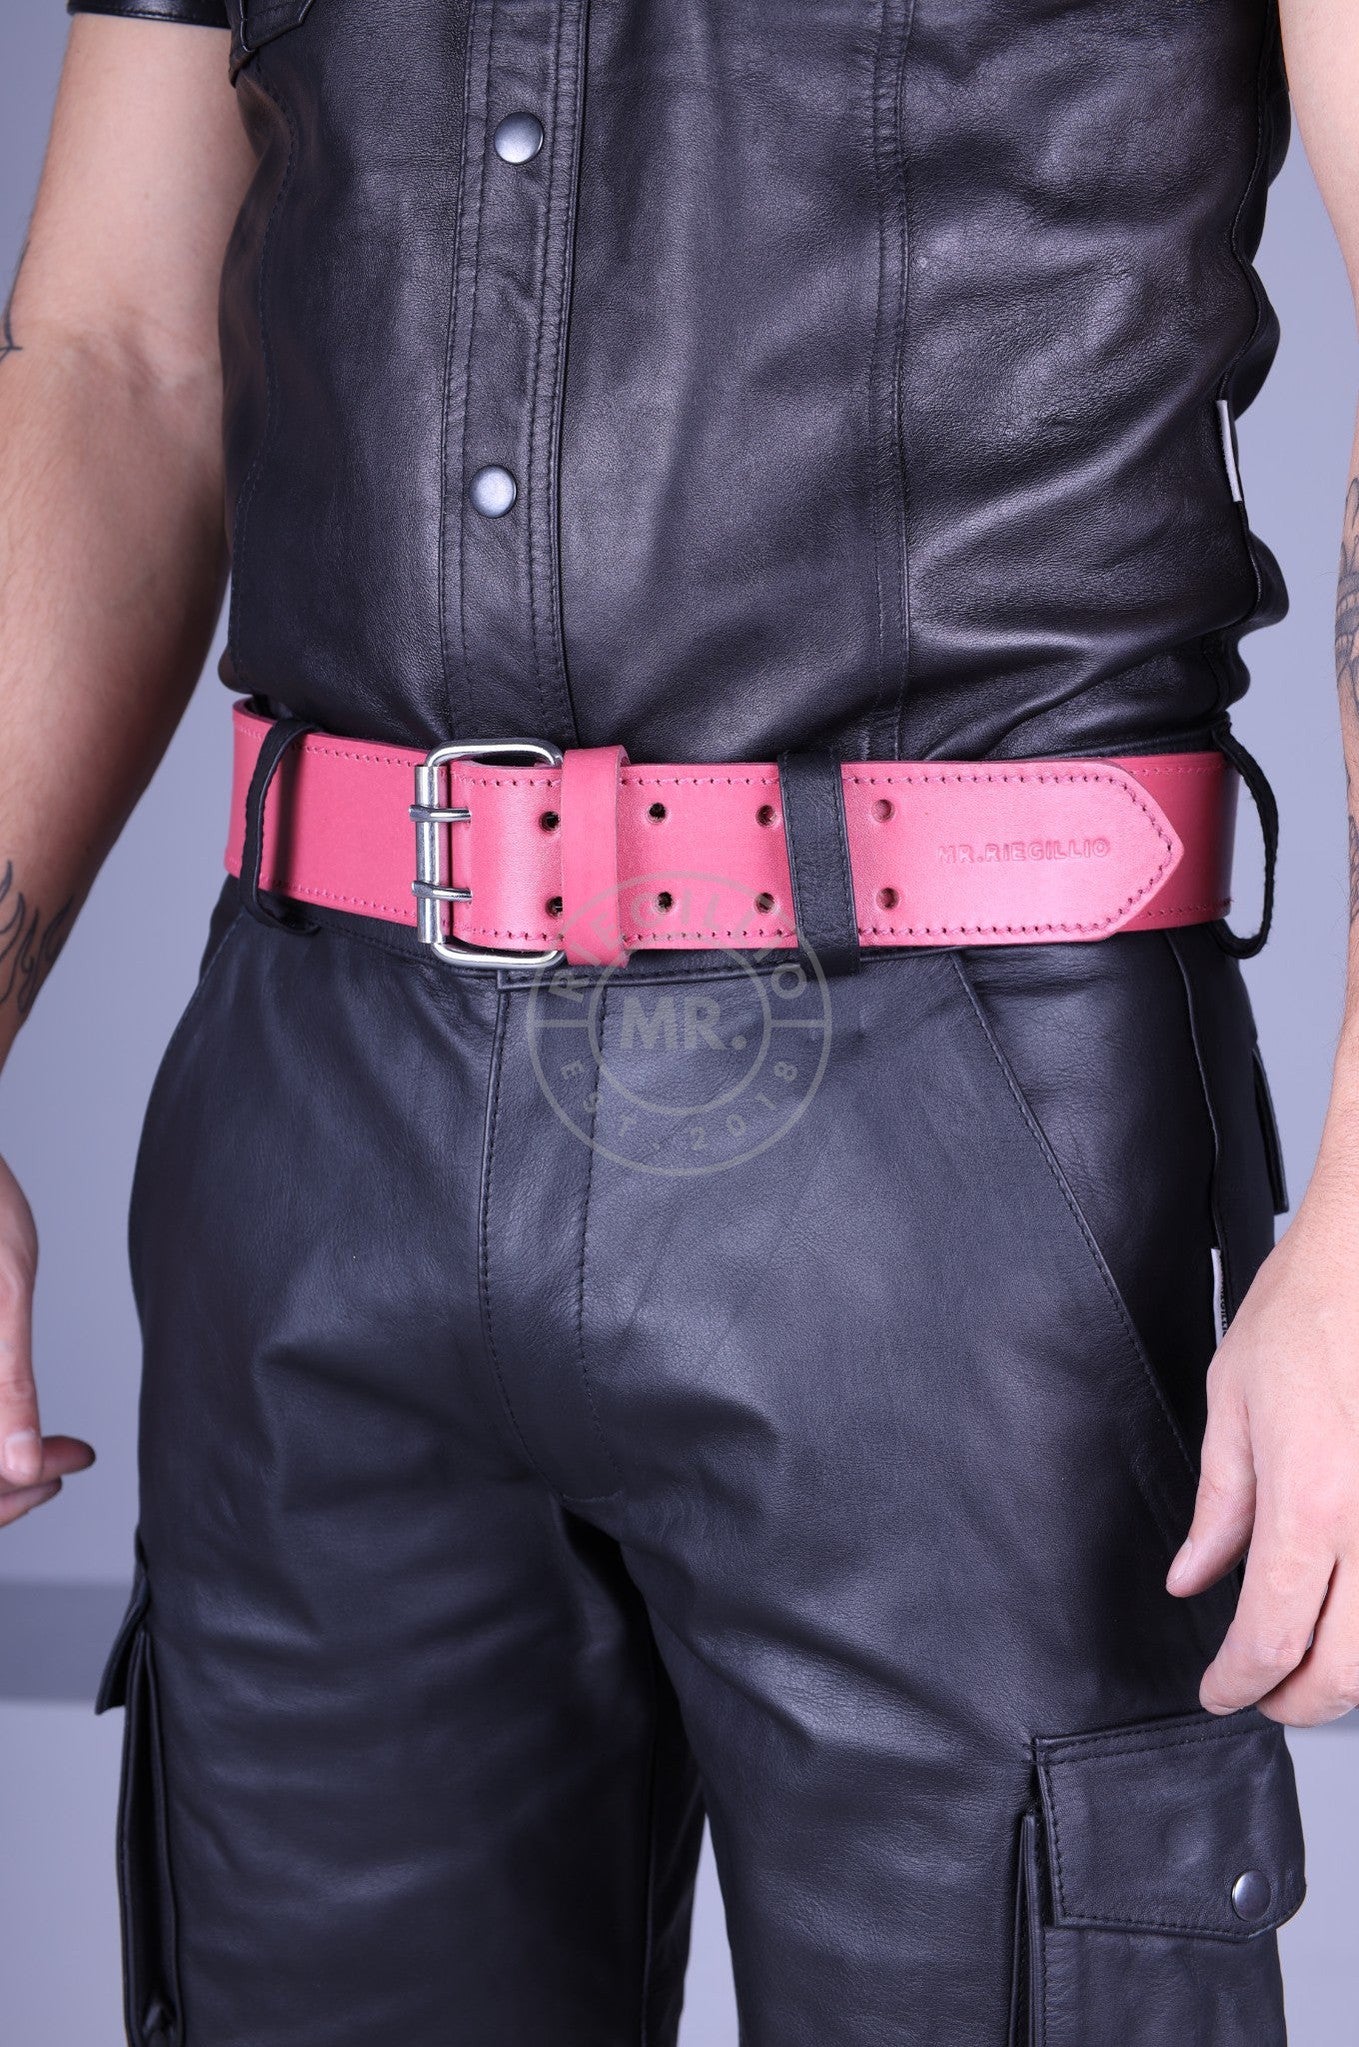 Pink Leather Belt at MR. Riegillio